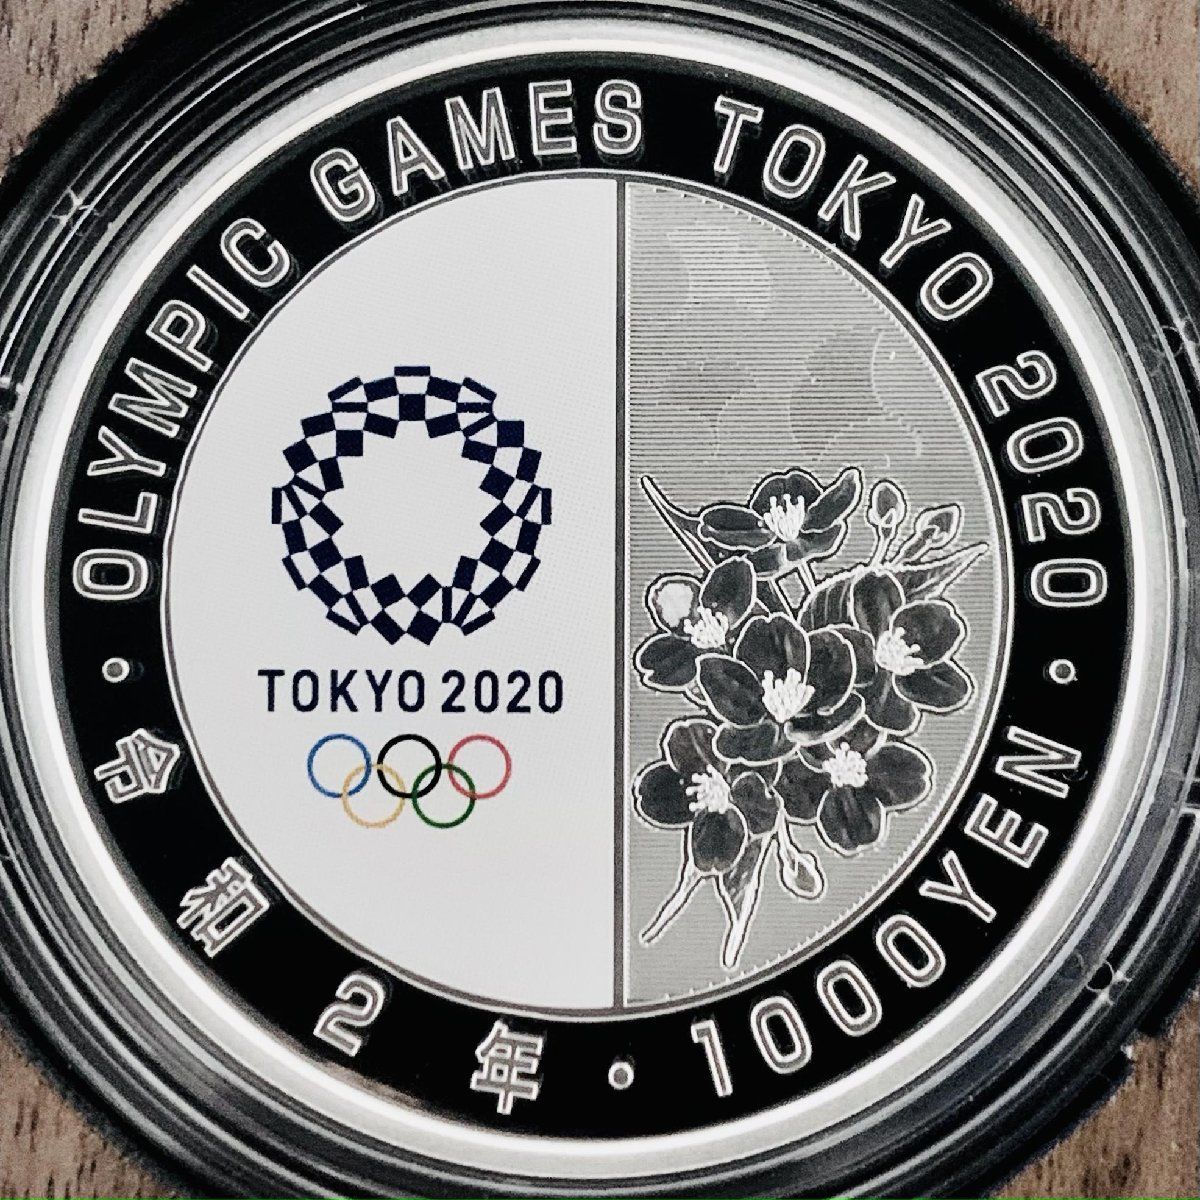 東京五輪 千円銀貨 レスリング 東京2020オリンピック競技大会記念 千円